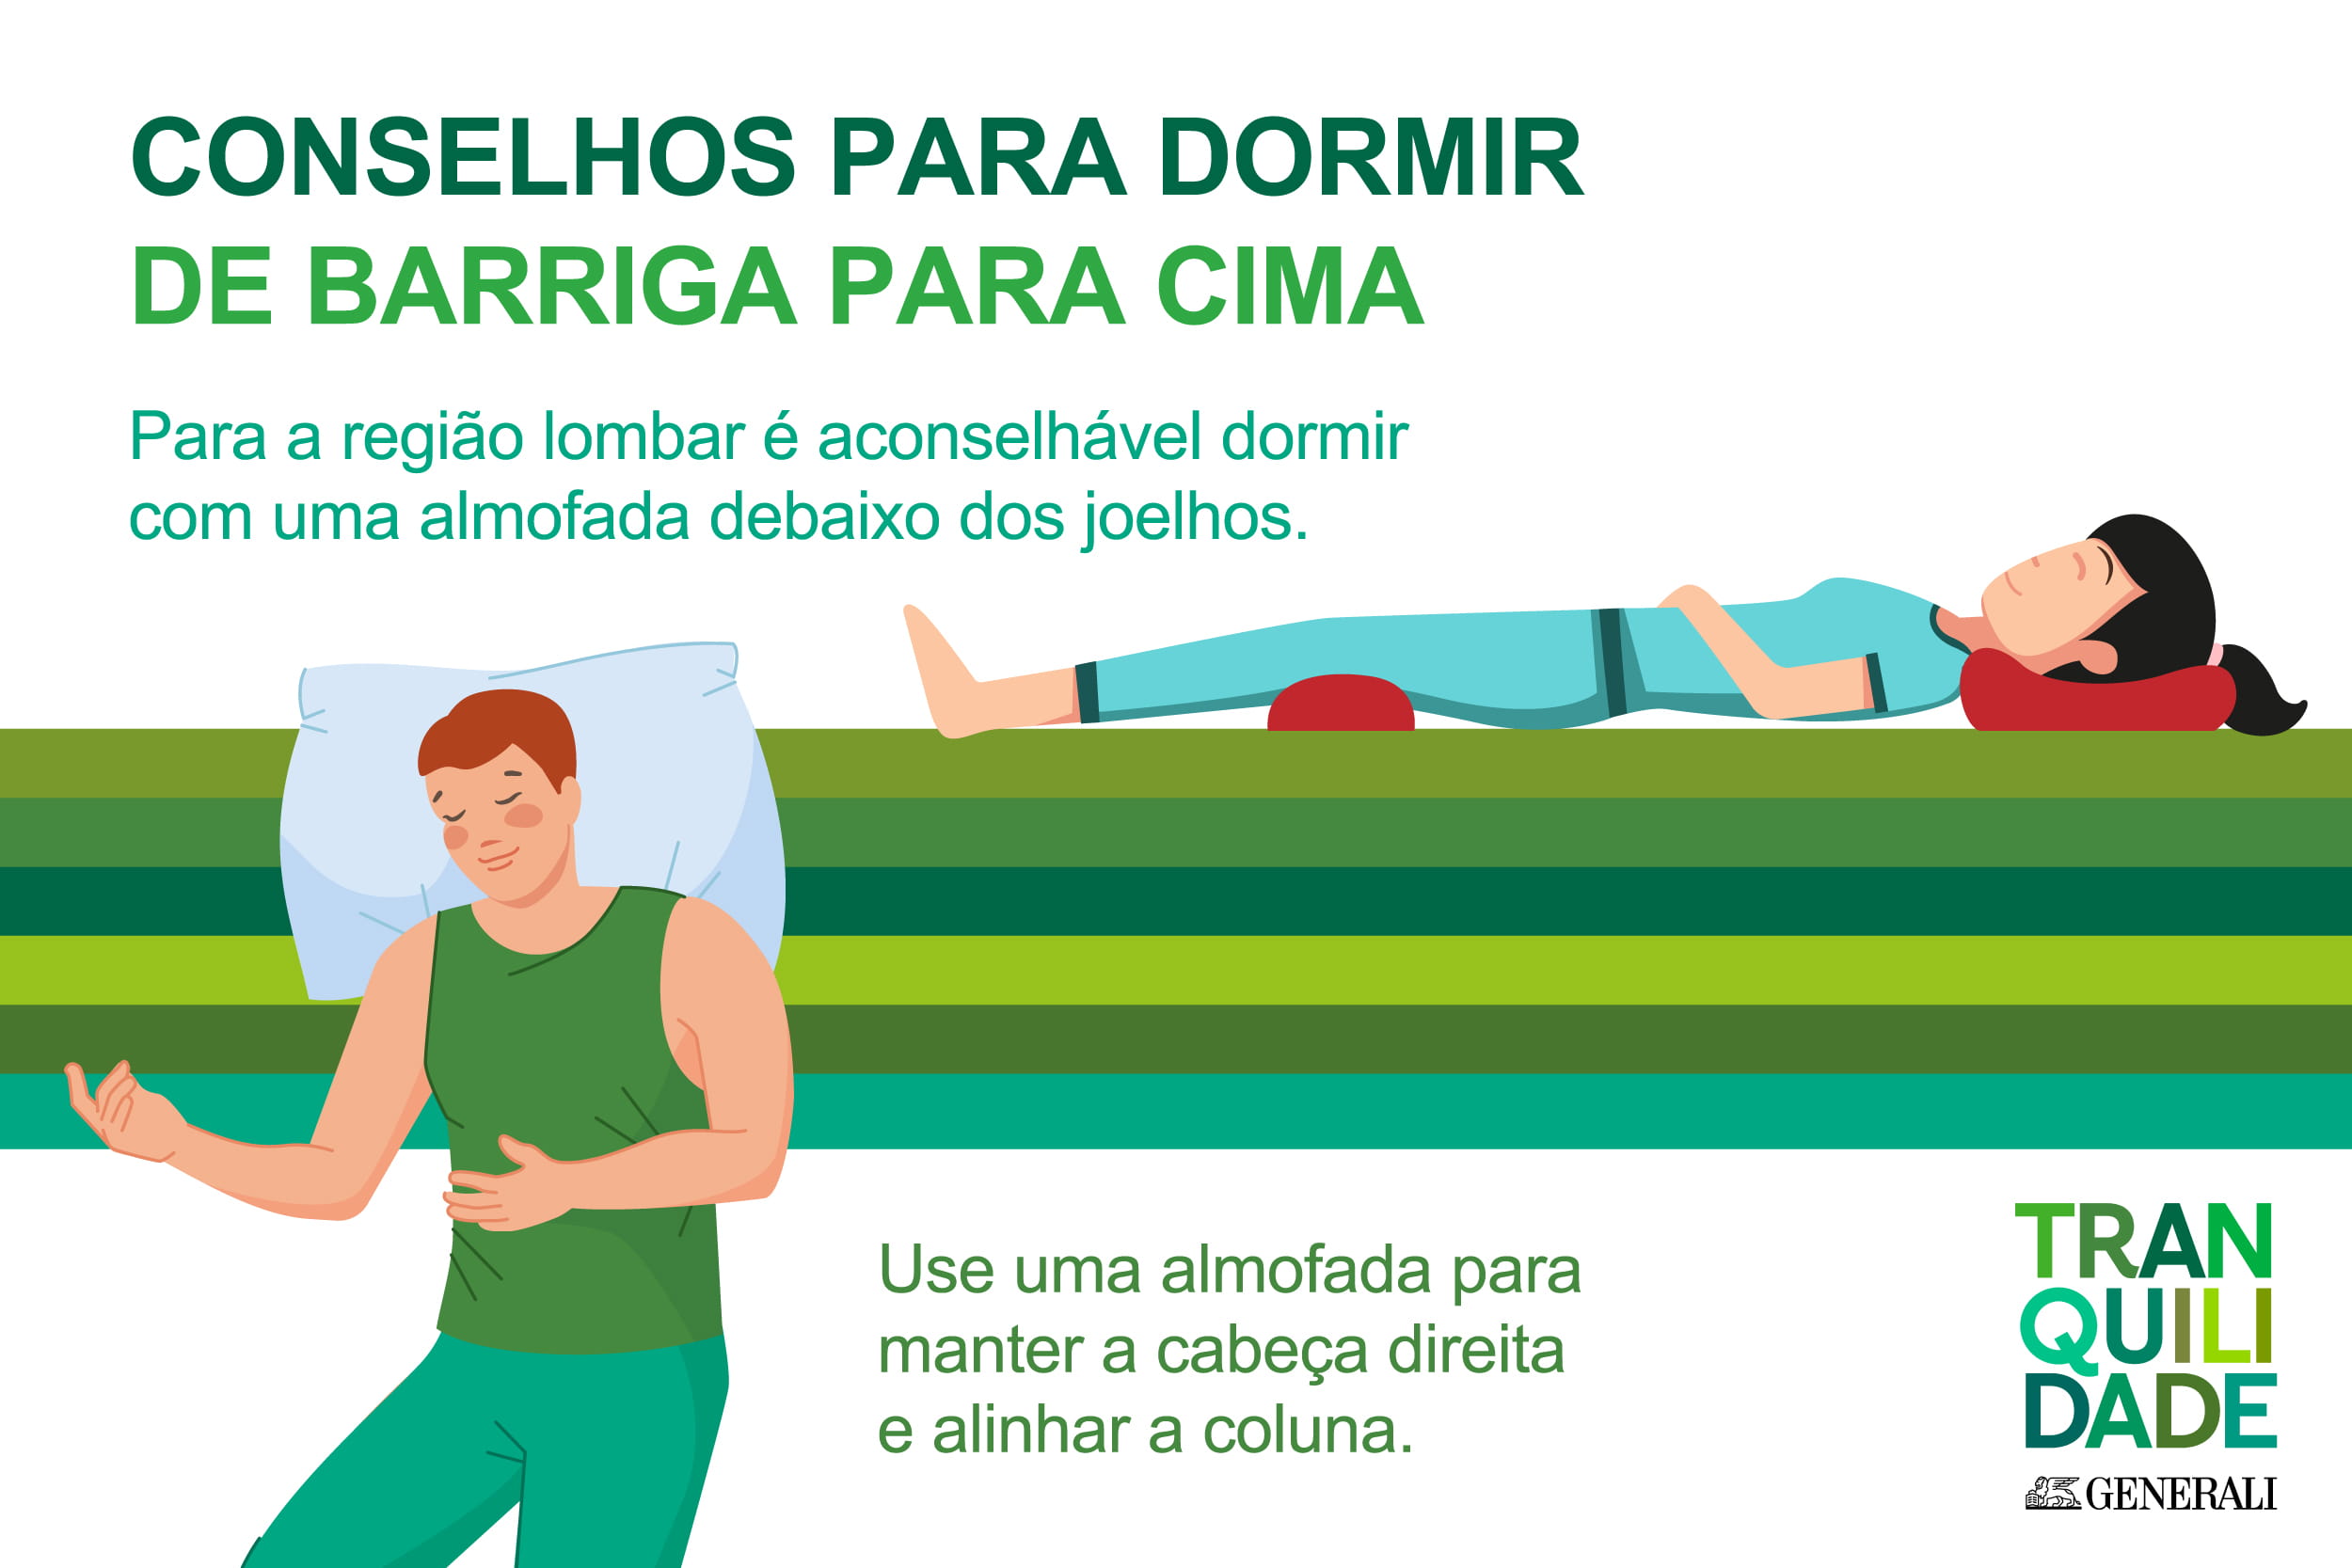 Infografia sobre conselhos para dormir de barriga para cima